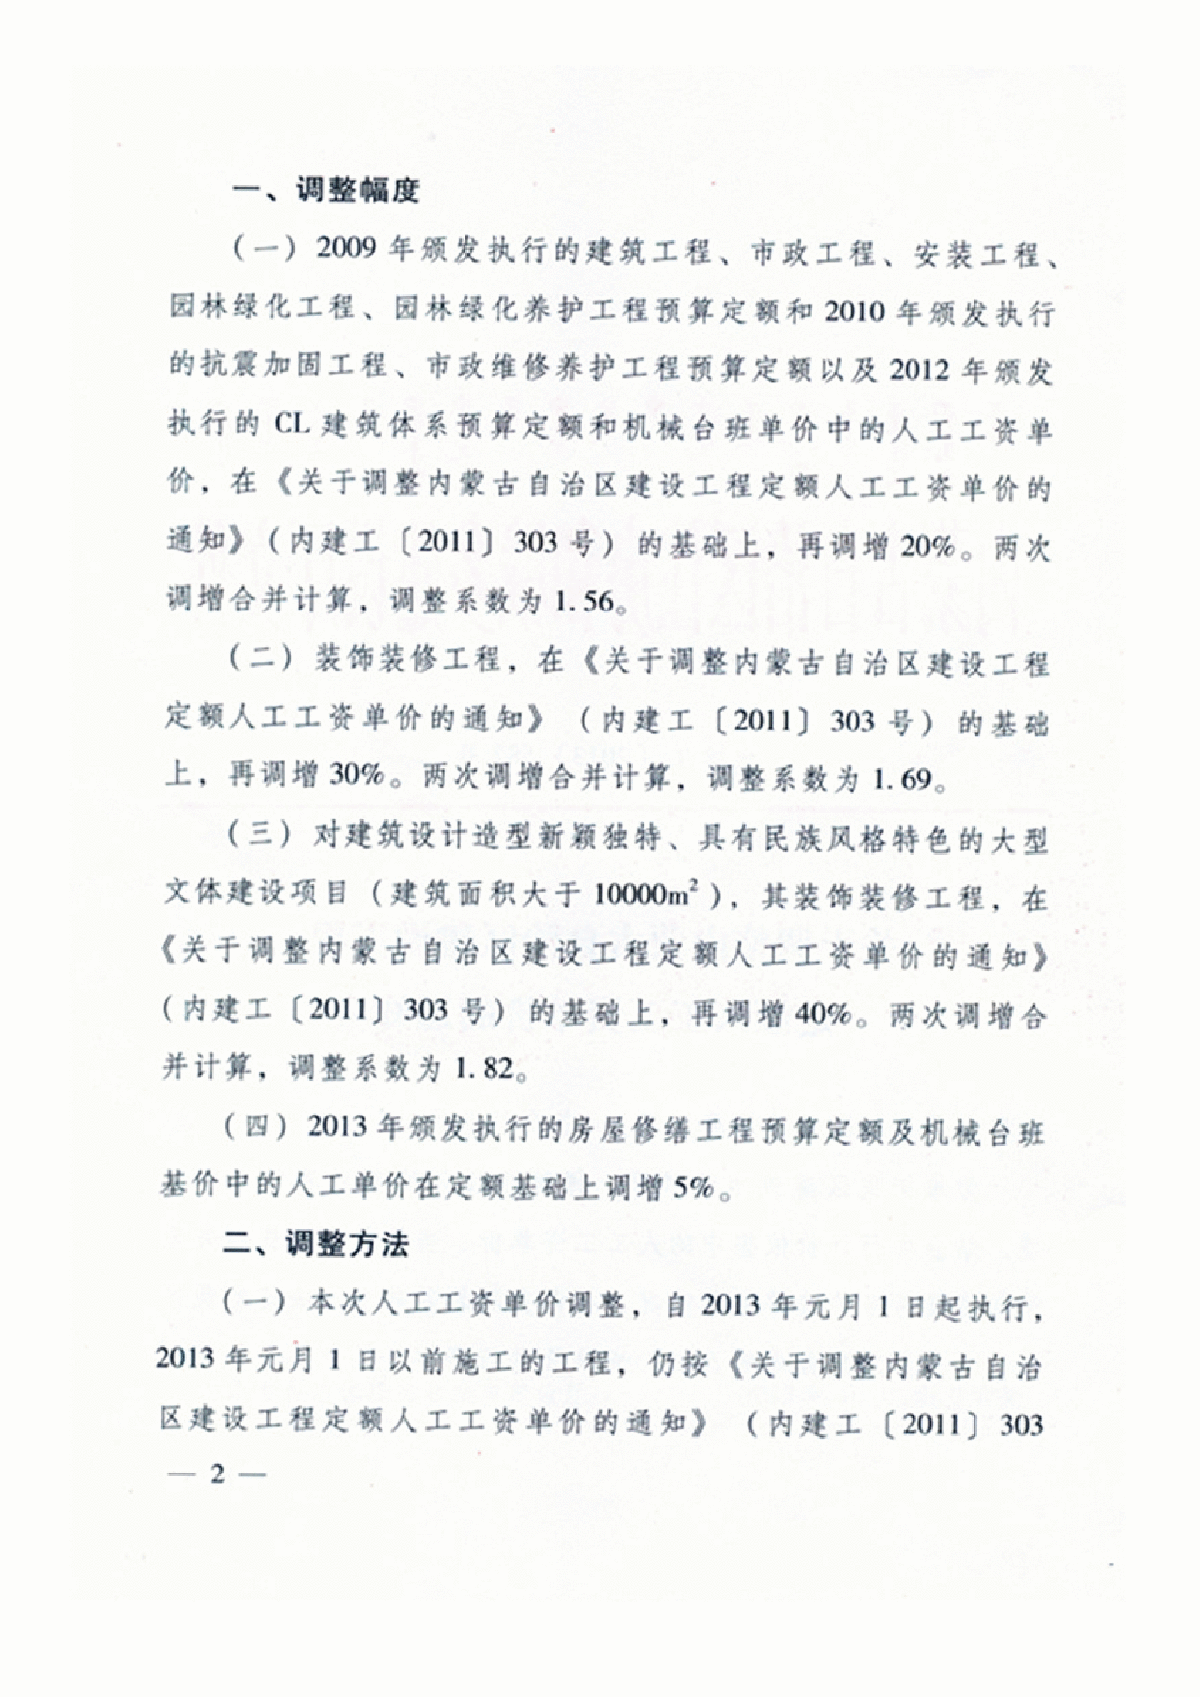 【内蒙古】人工费调整的指导价文件 （内建工（2013）587号）-图二